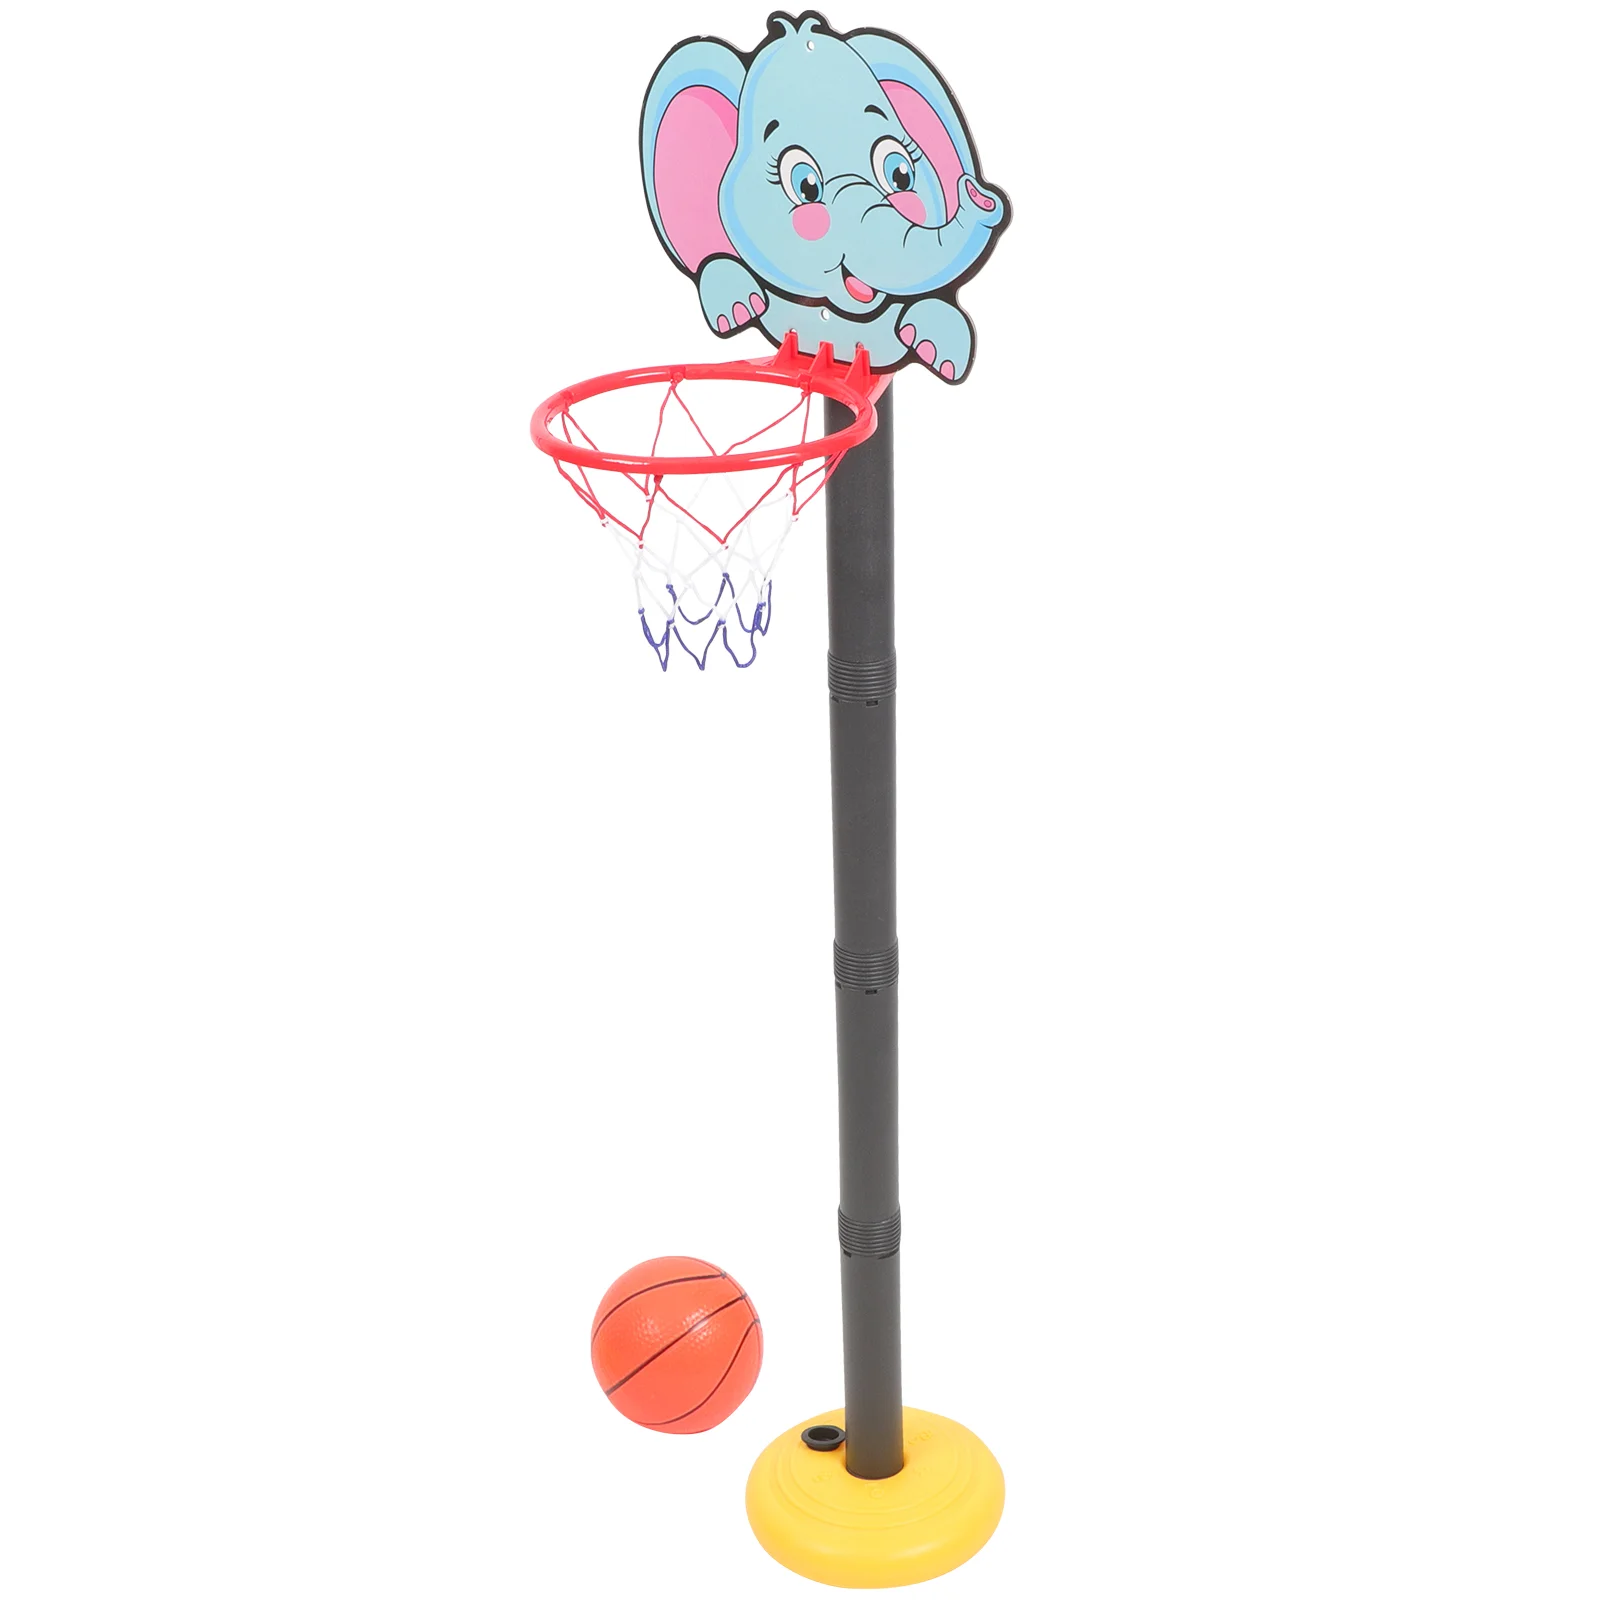 

1 комплект, Детская баскетбольная подставка с мультяшными животными, Регулируемая Баскетбольная подставка для помещений и улицы